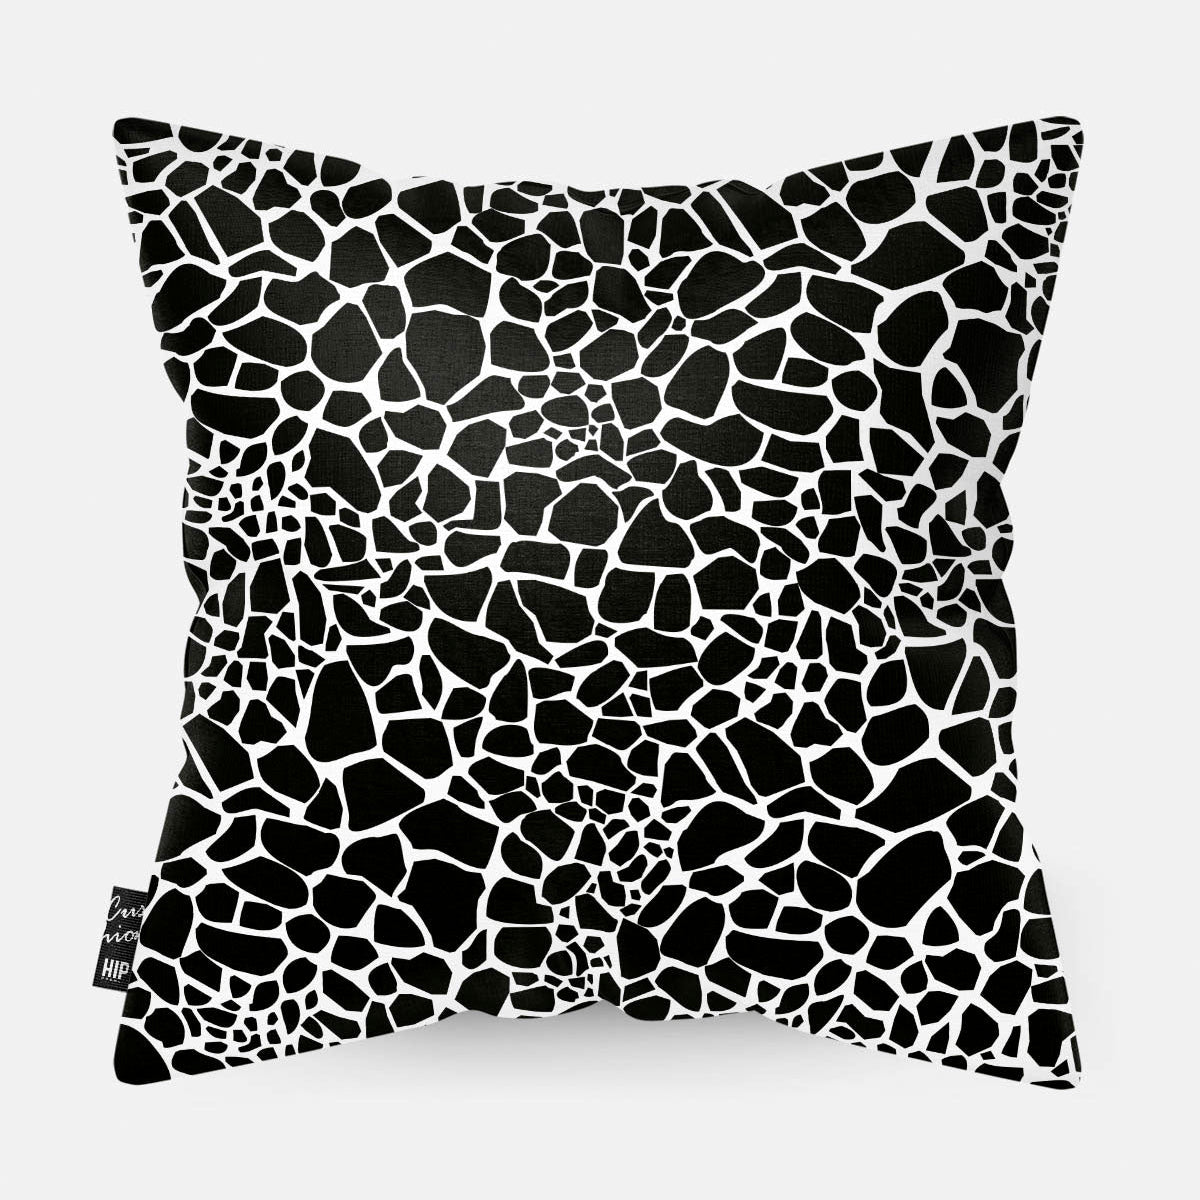 Kussen met de huid van een giraf in zwart-wit erop afgebeeld.